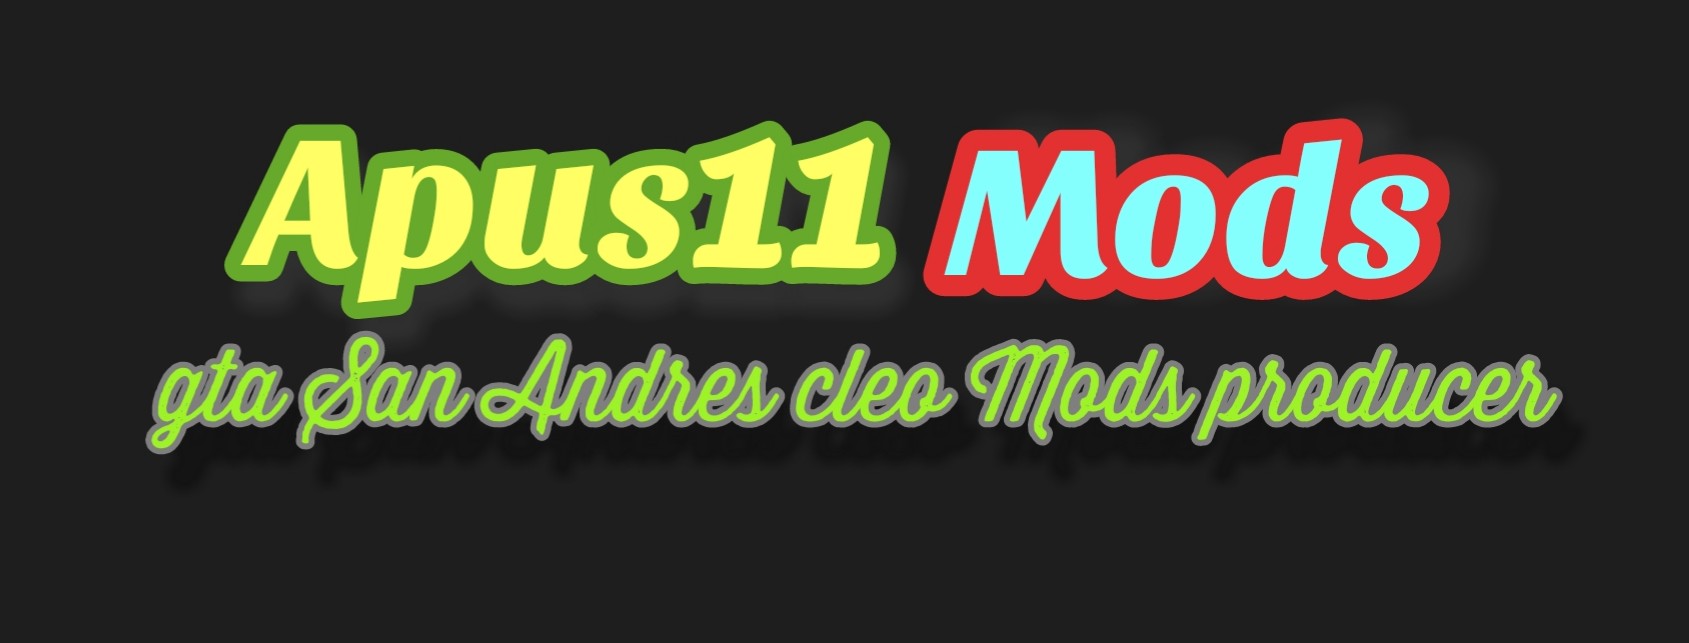 Apus11 Mods